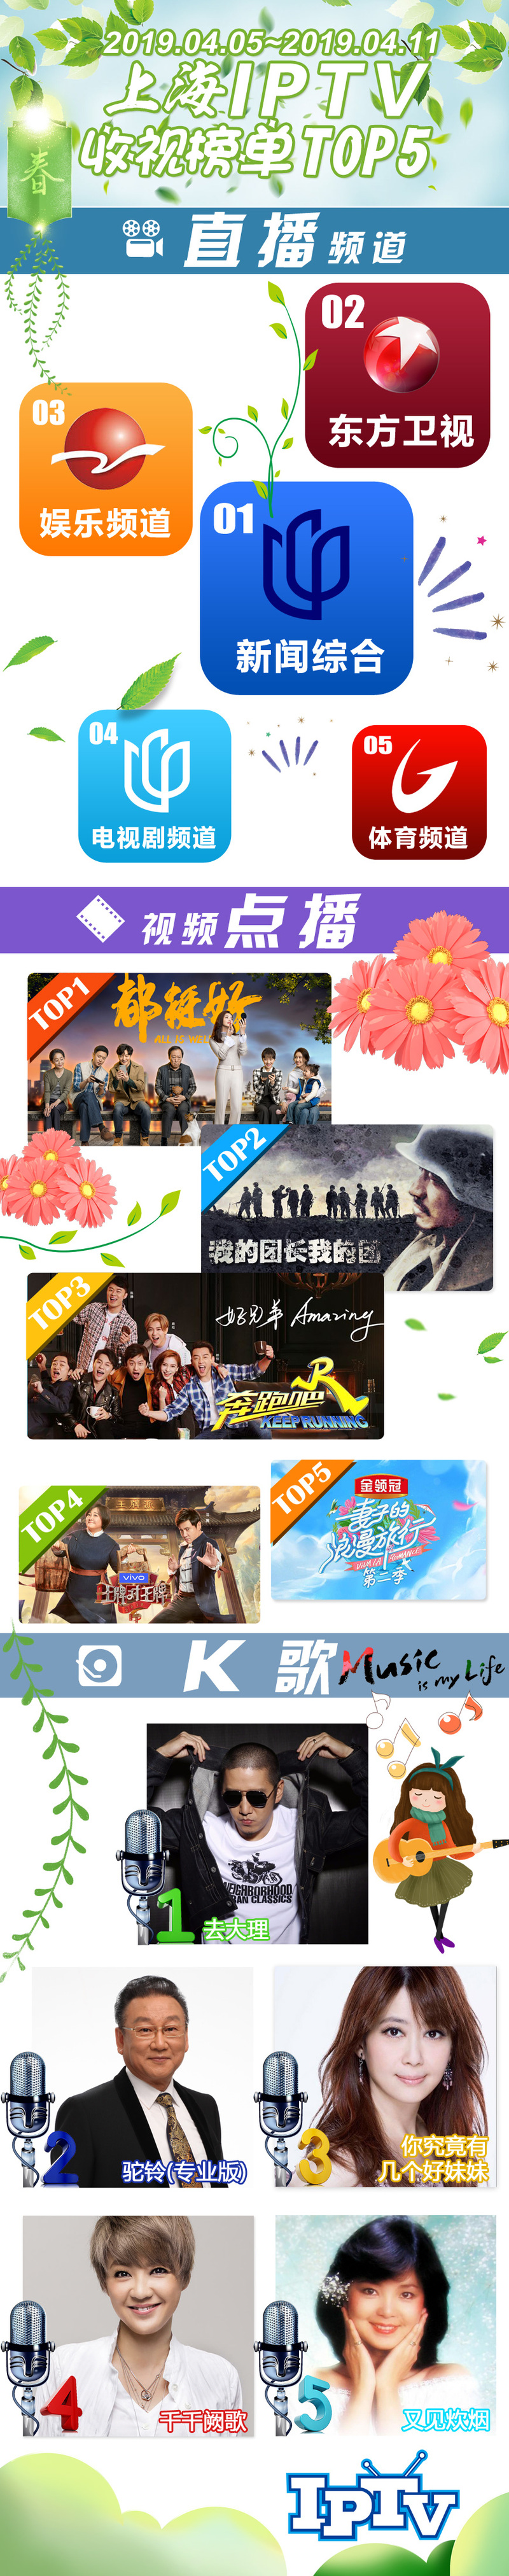 2019微博-上海IPTV收视榜单TOP5-190412.jpg